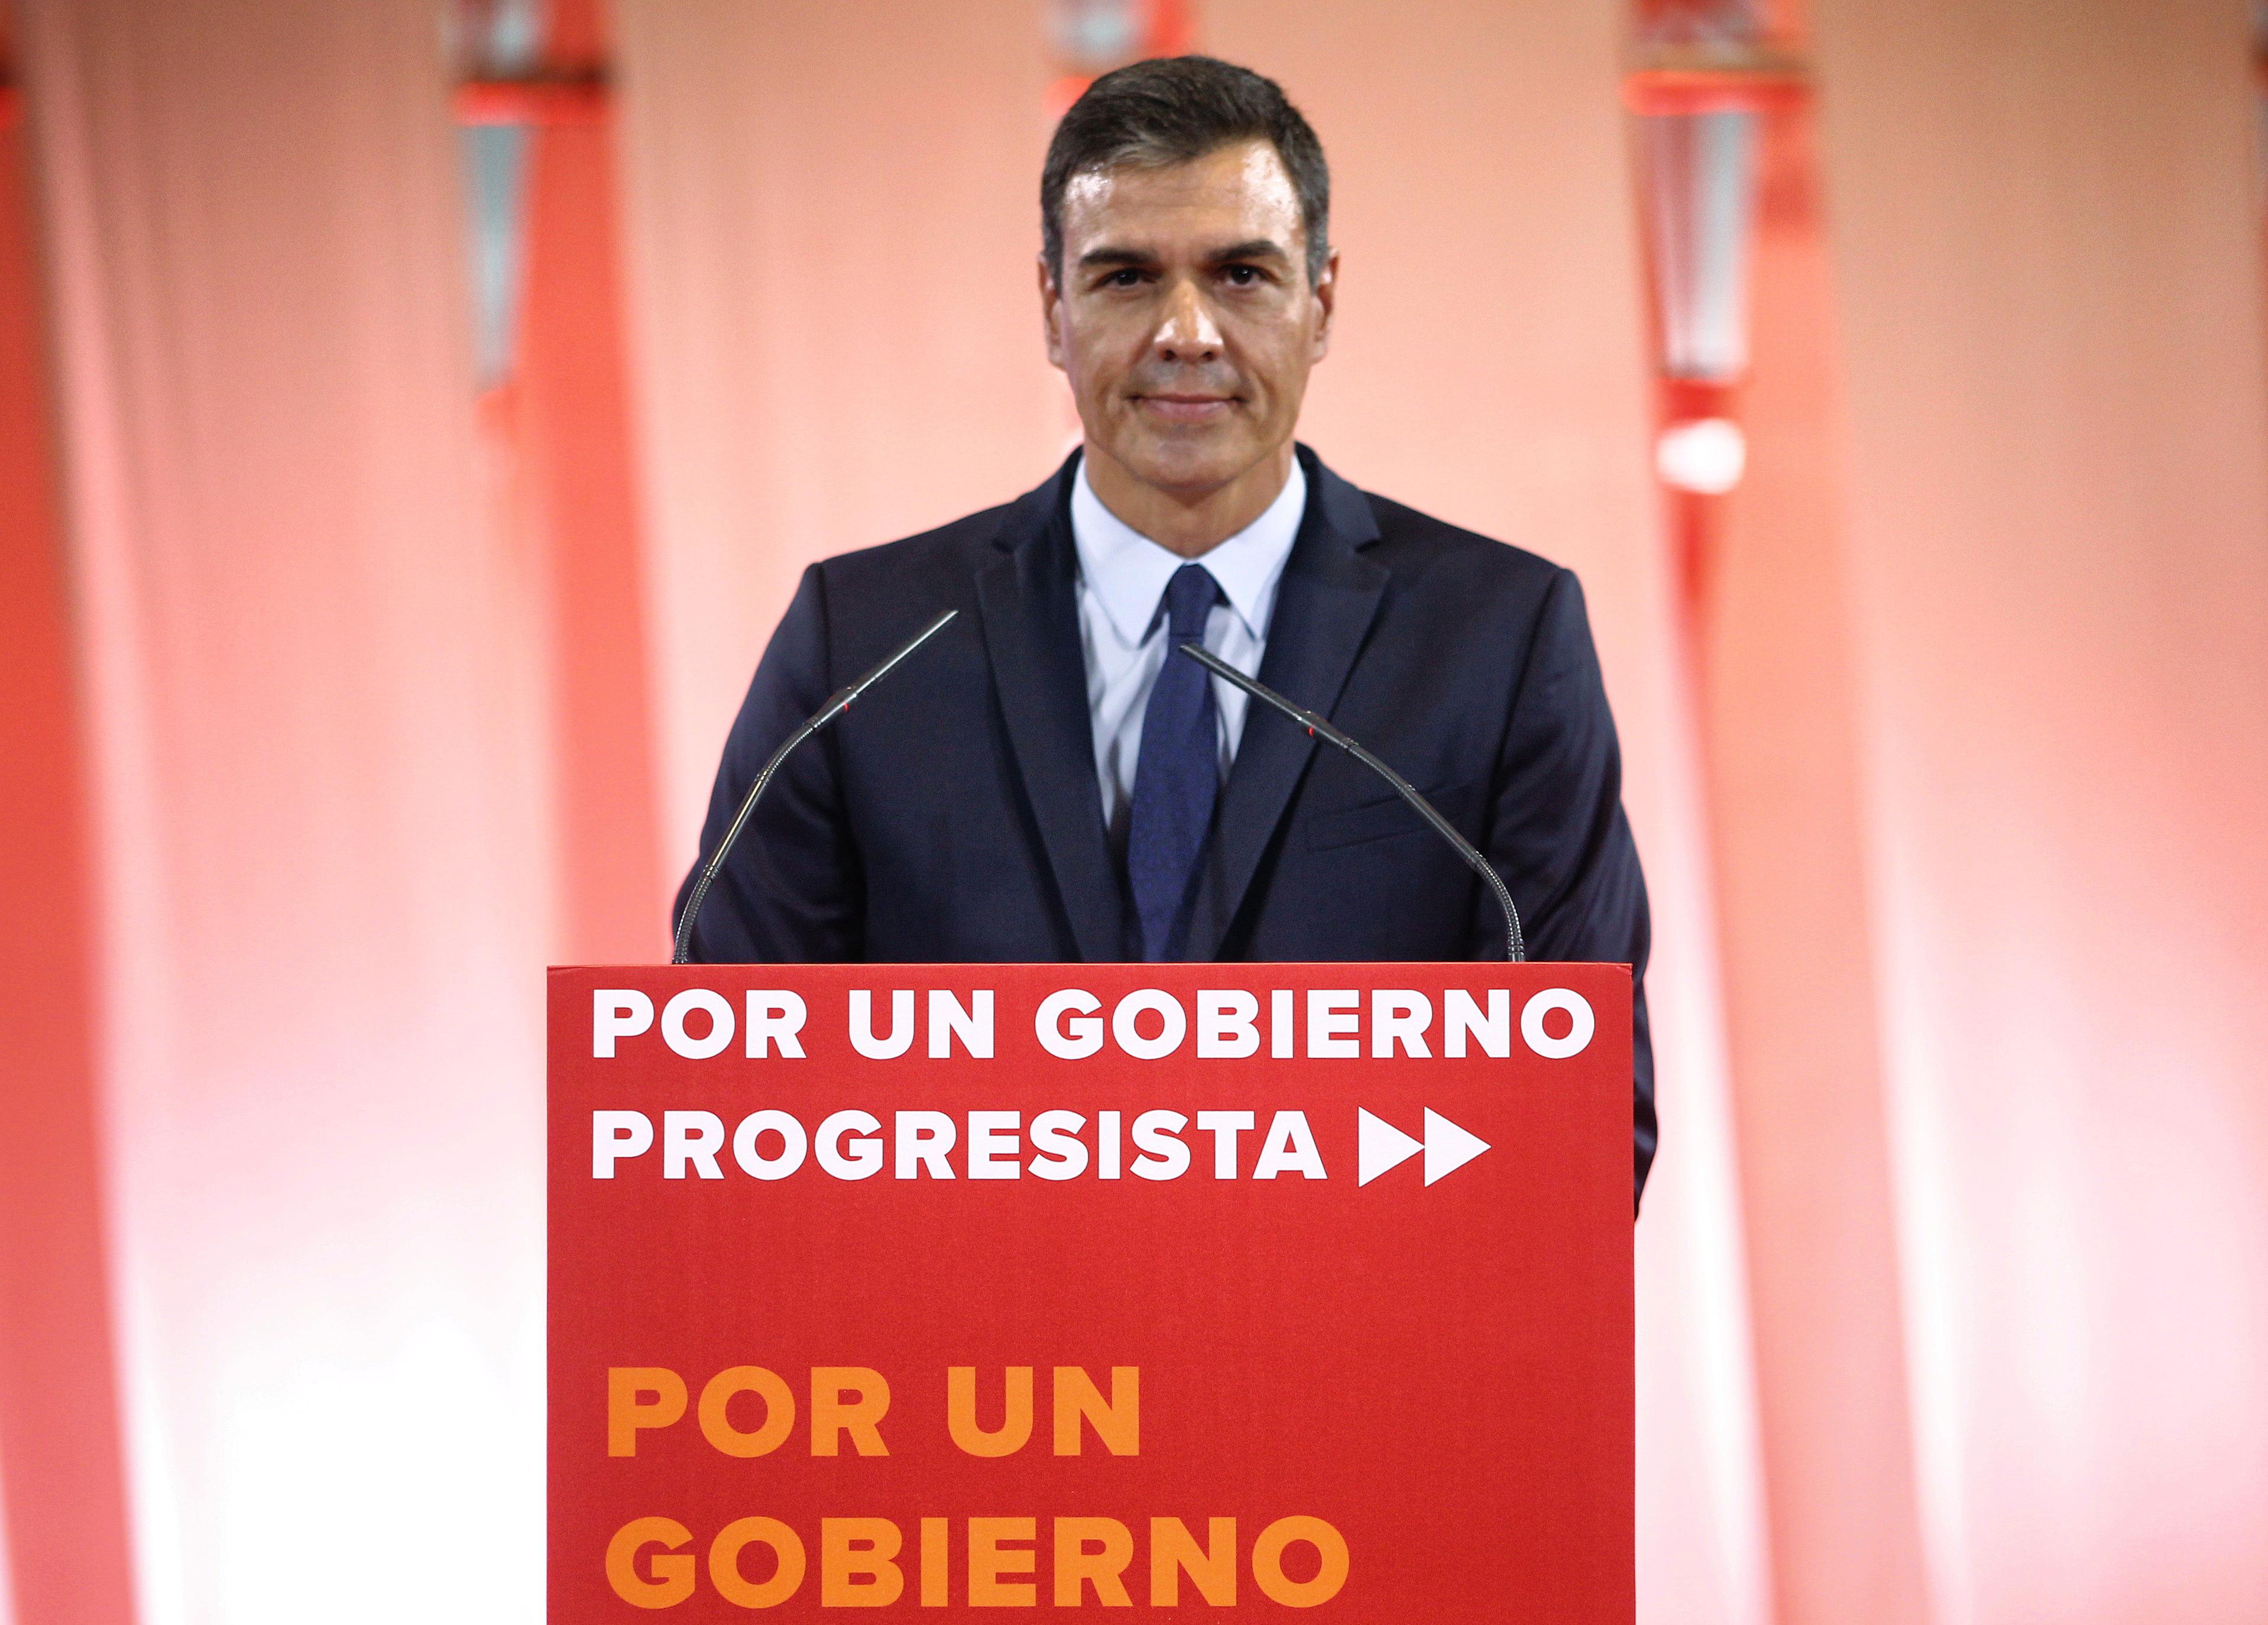 Pedro Sánchez durante su intervención en la presentación de la propuesta abierta de 'Programa común progresista'. EP